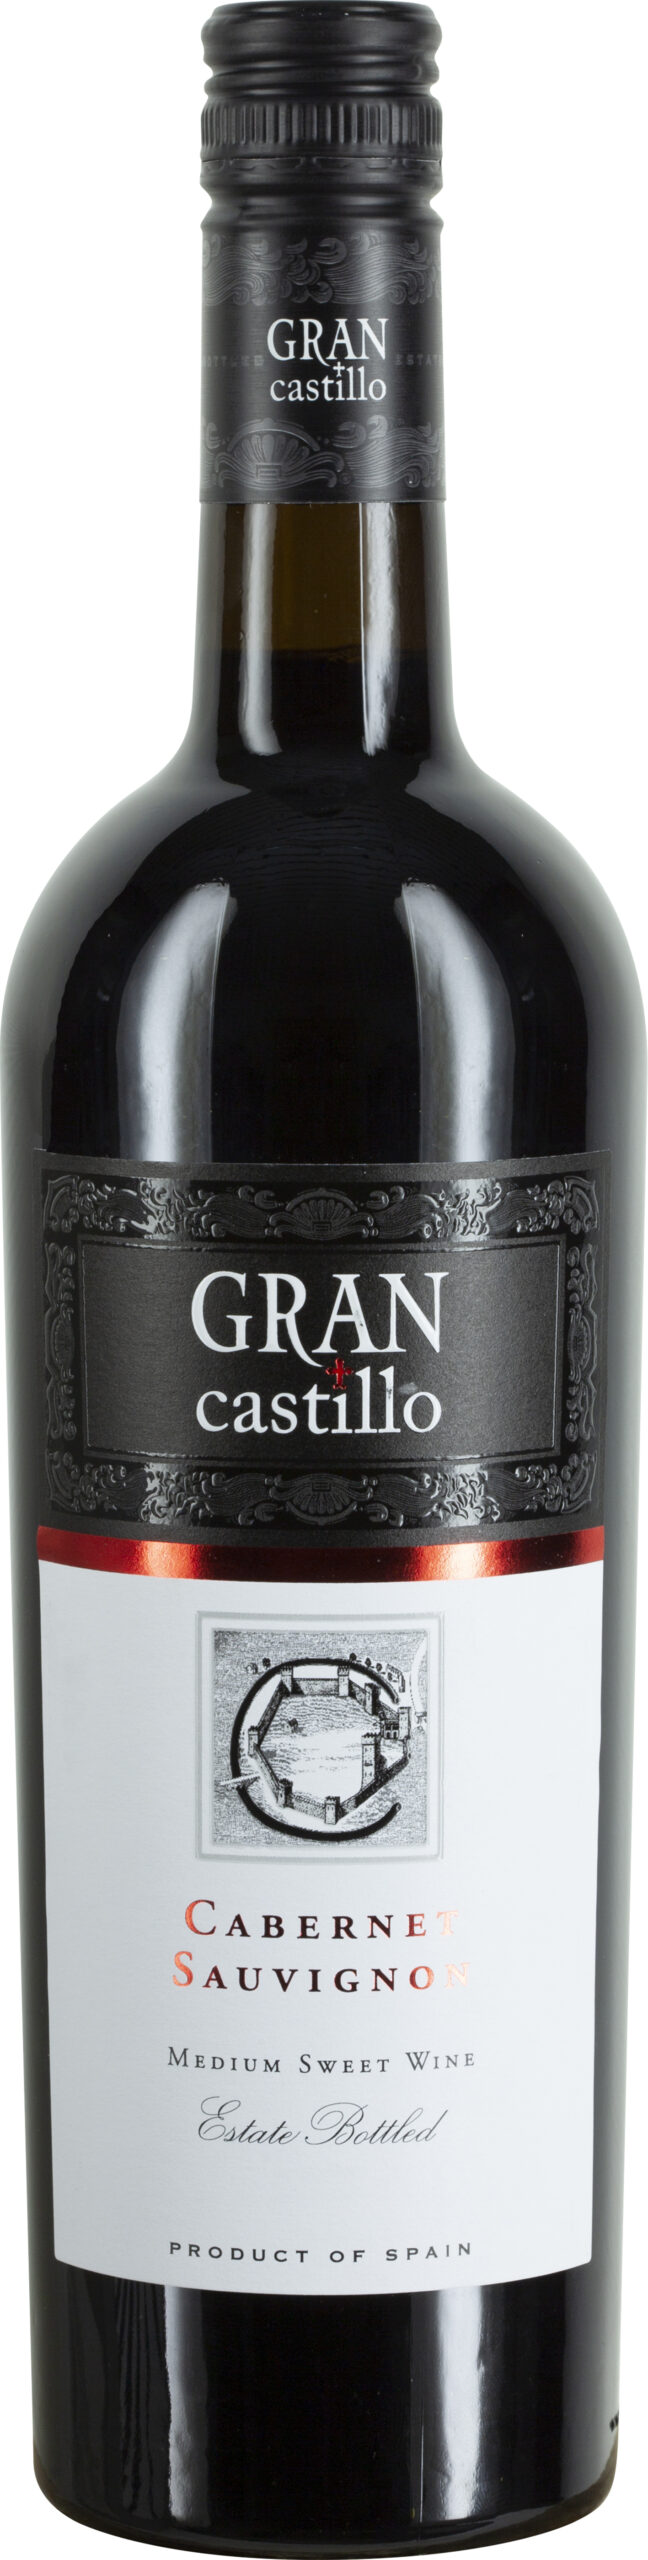 Gran Castillo, Cabernet DOP Sauvignon Weine Schenk Valencia 